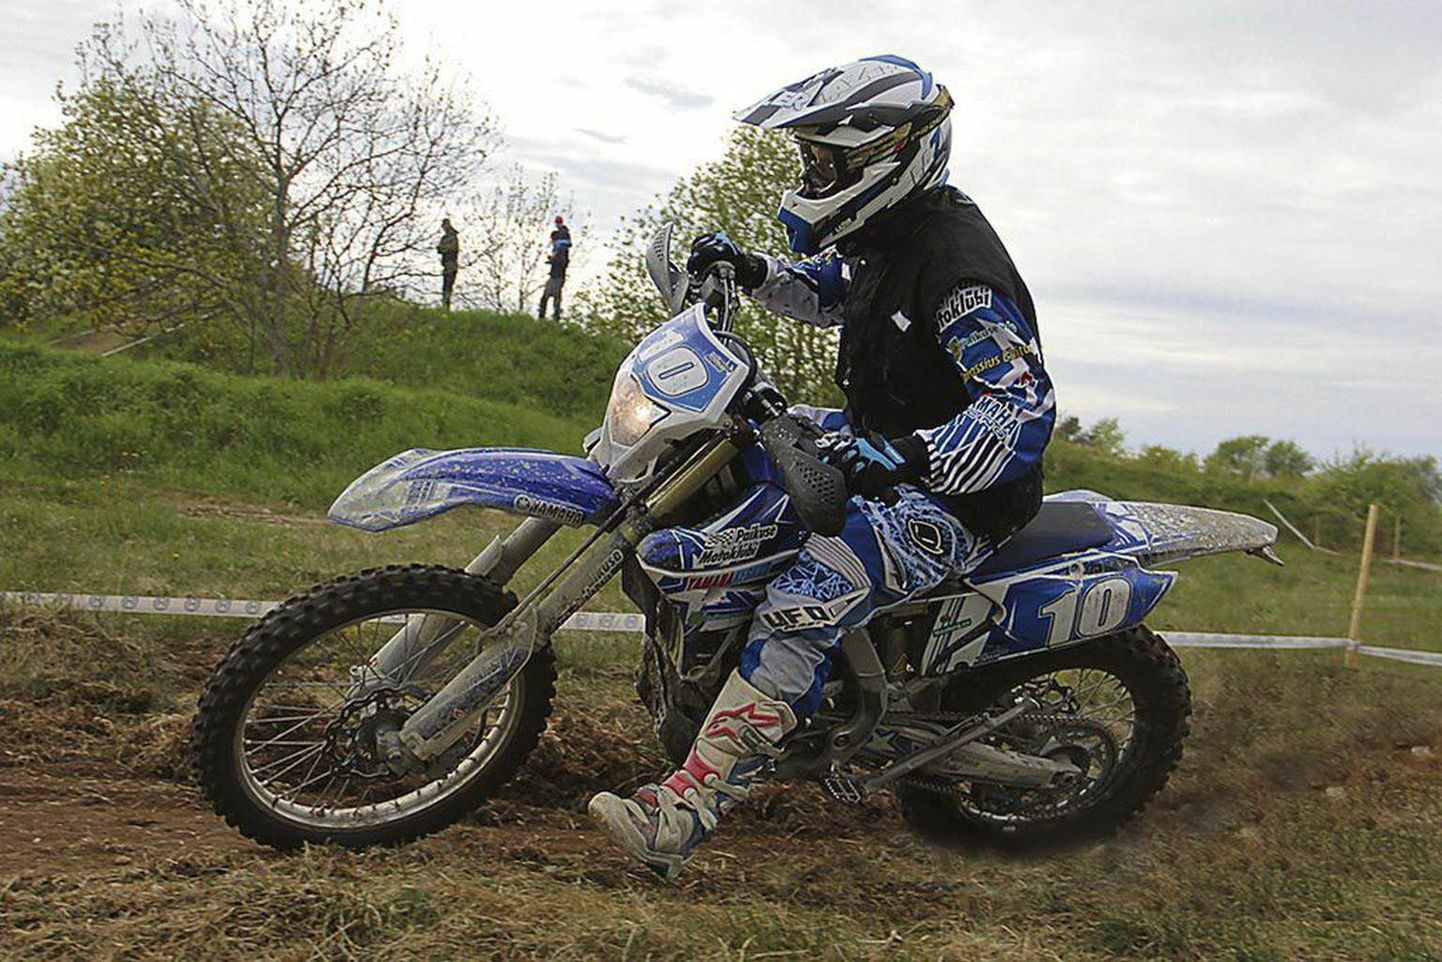 Paikuse motoklubi enduuroäss Toivo Nikopensius kihutas Saku motomaratonil seenioride esimese auhinna vääriliselt.